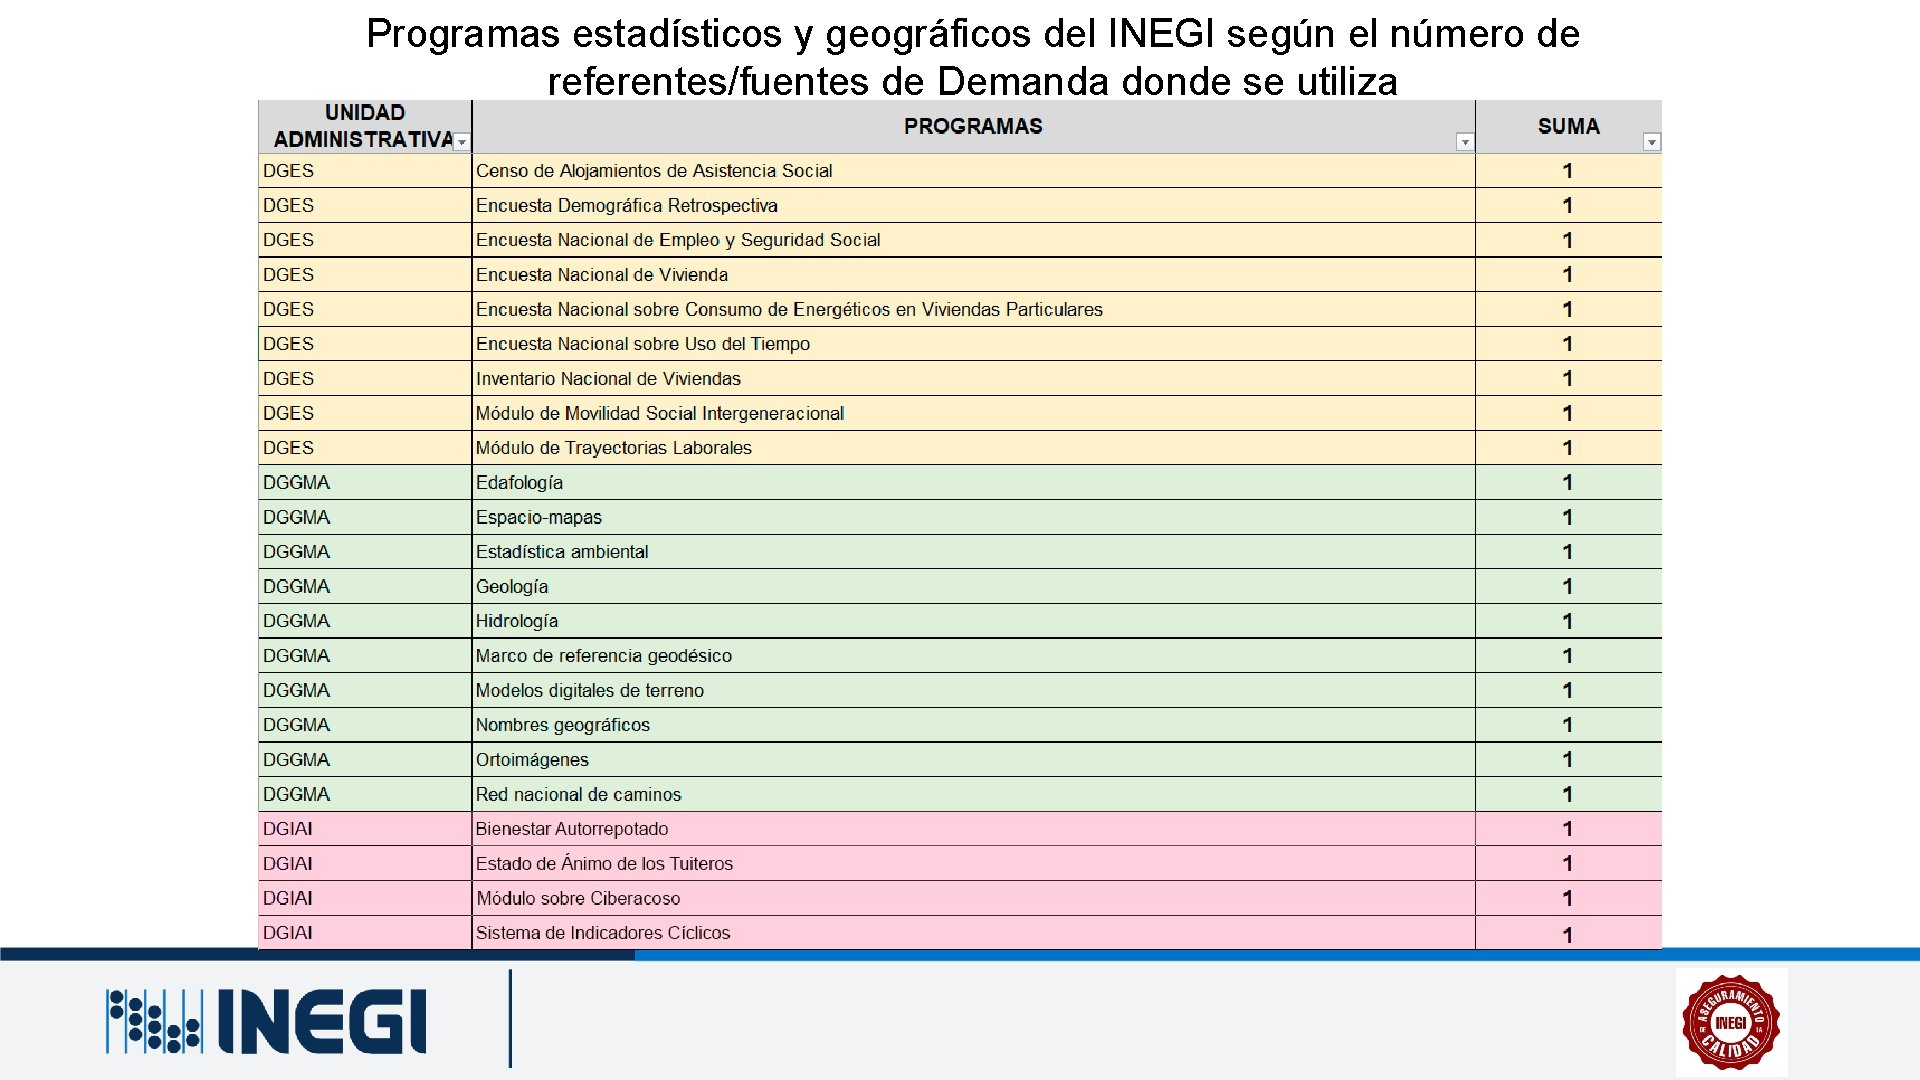 Programas estadísticos y geográficos del INEGI según el número de referentes/fuentes de Demanda donde